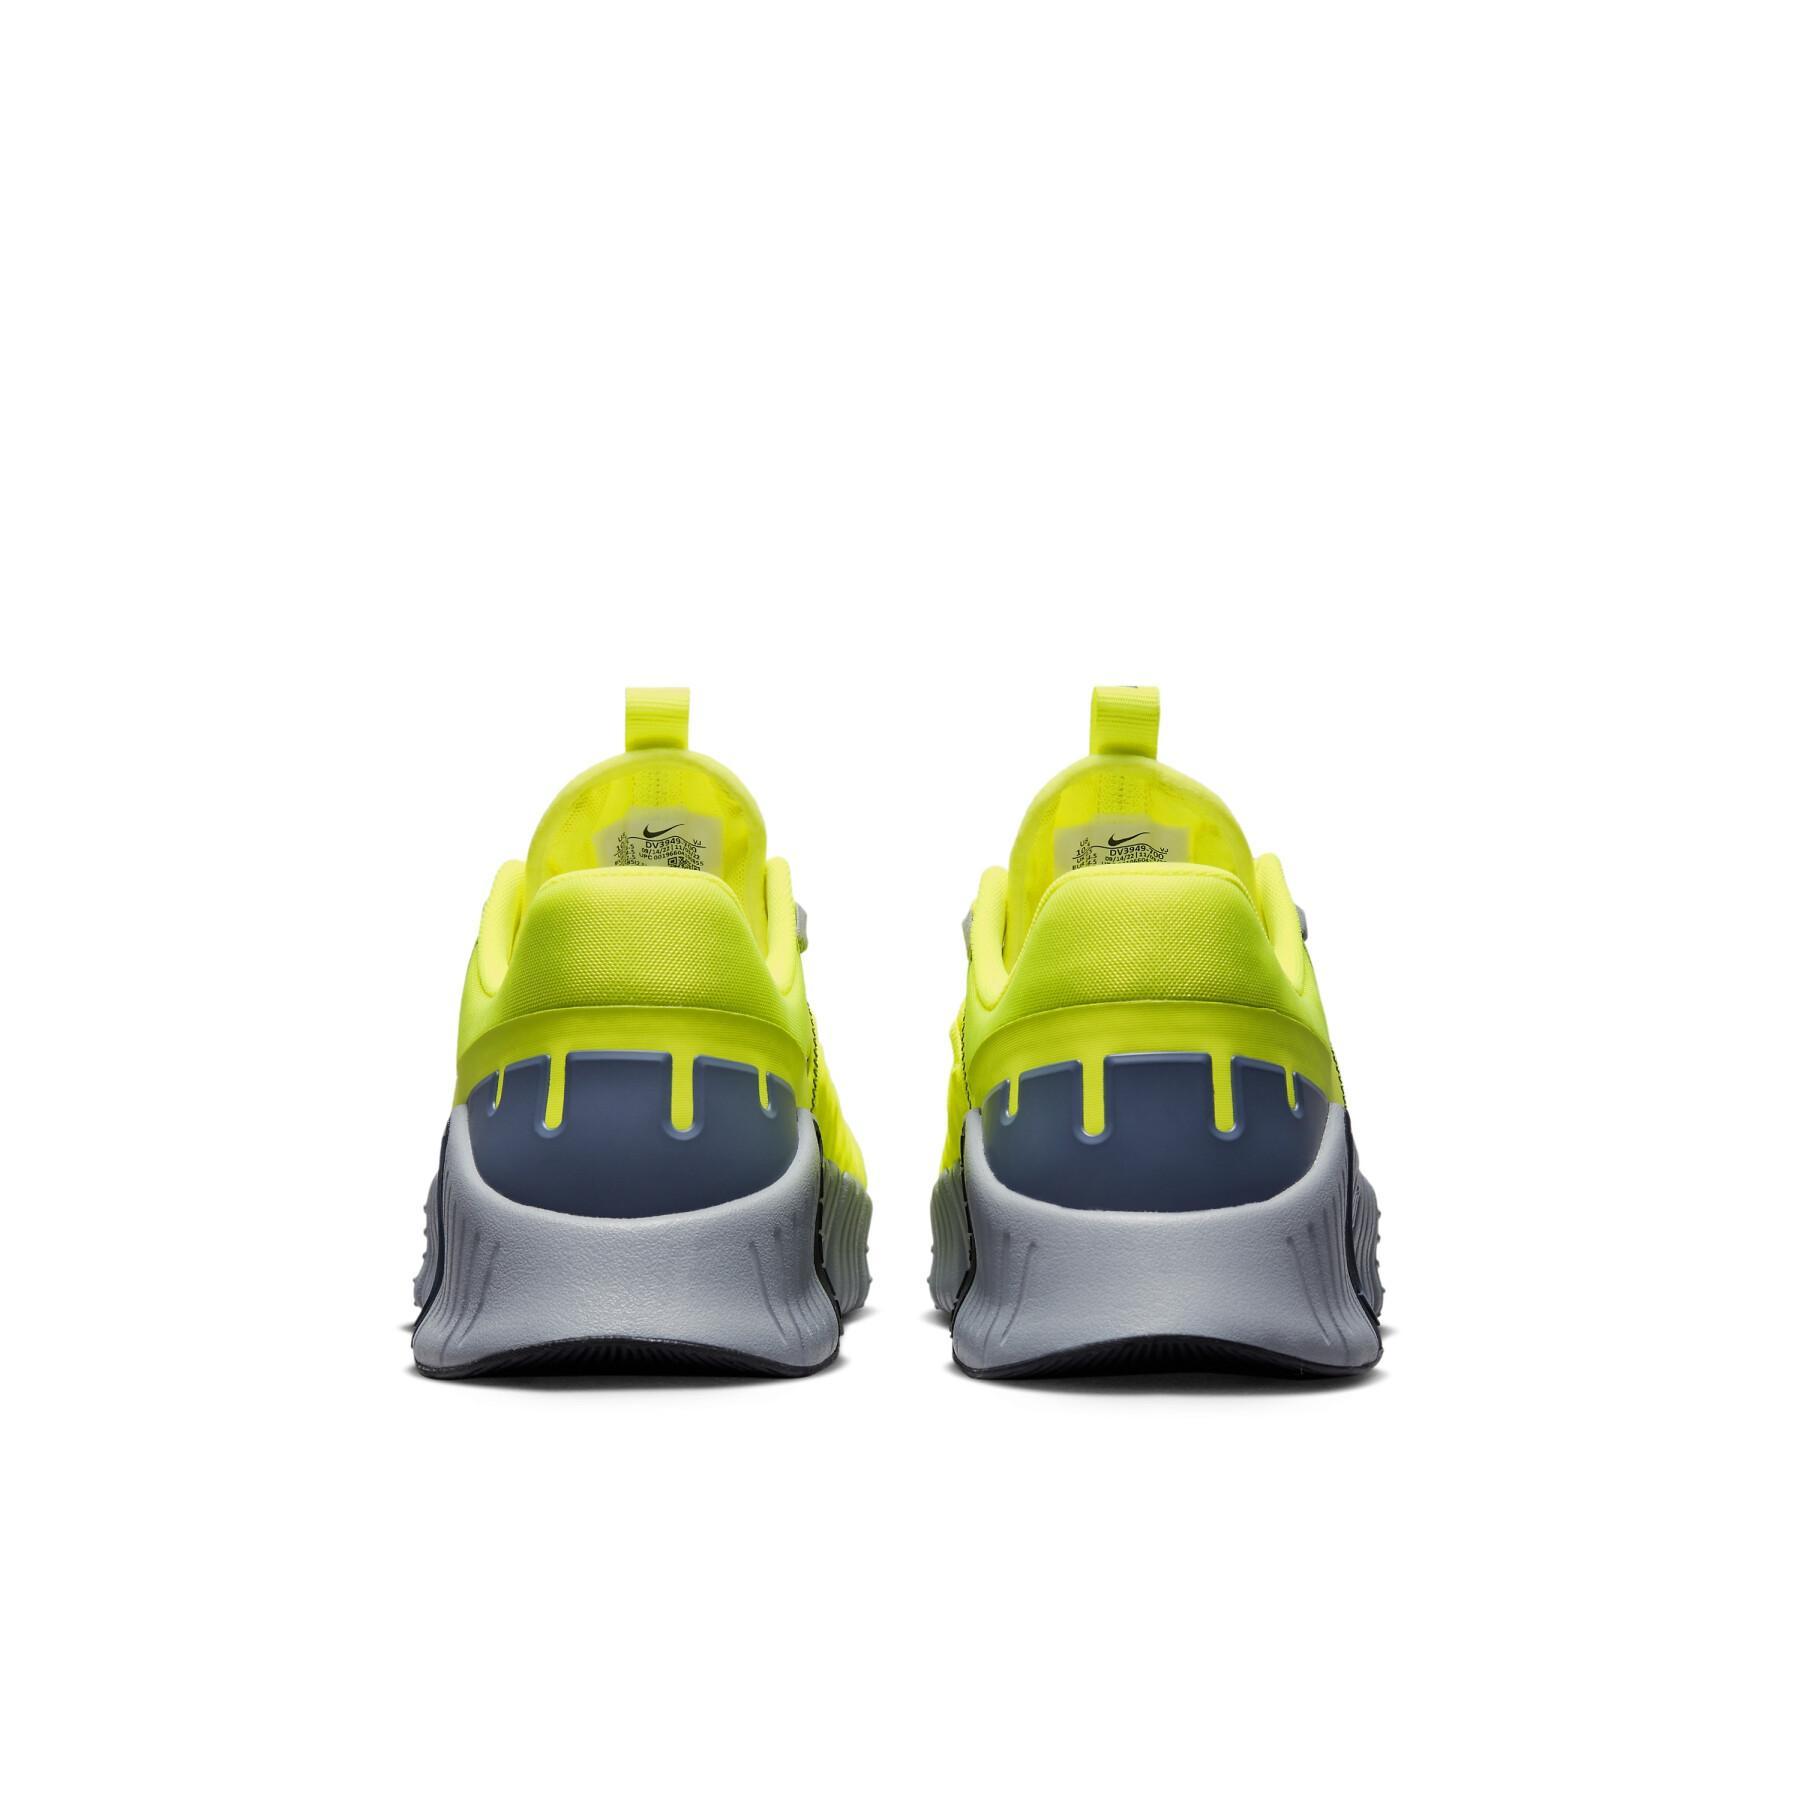 Buty do treningu biegowego Nike Free Metcon 5